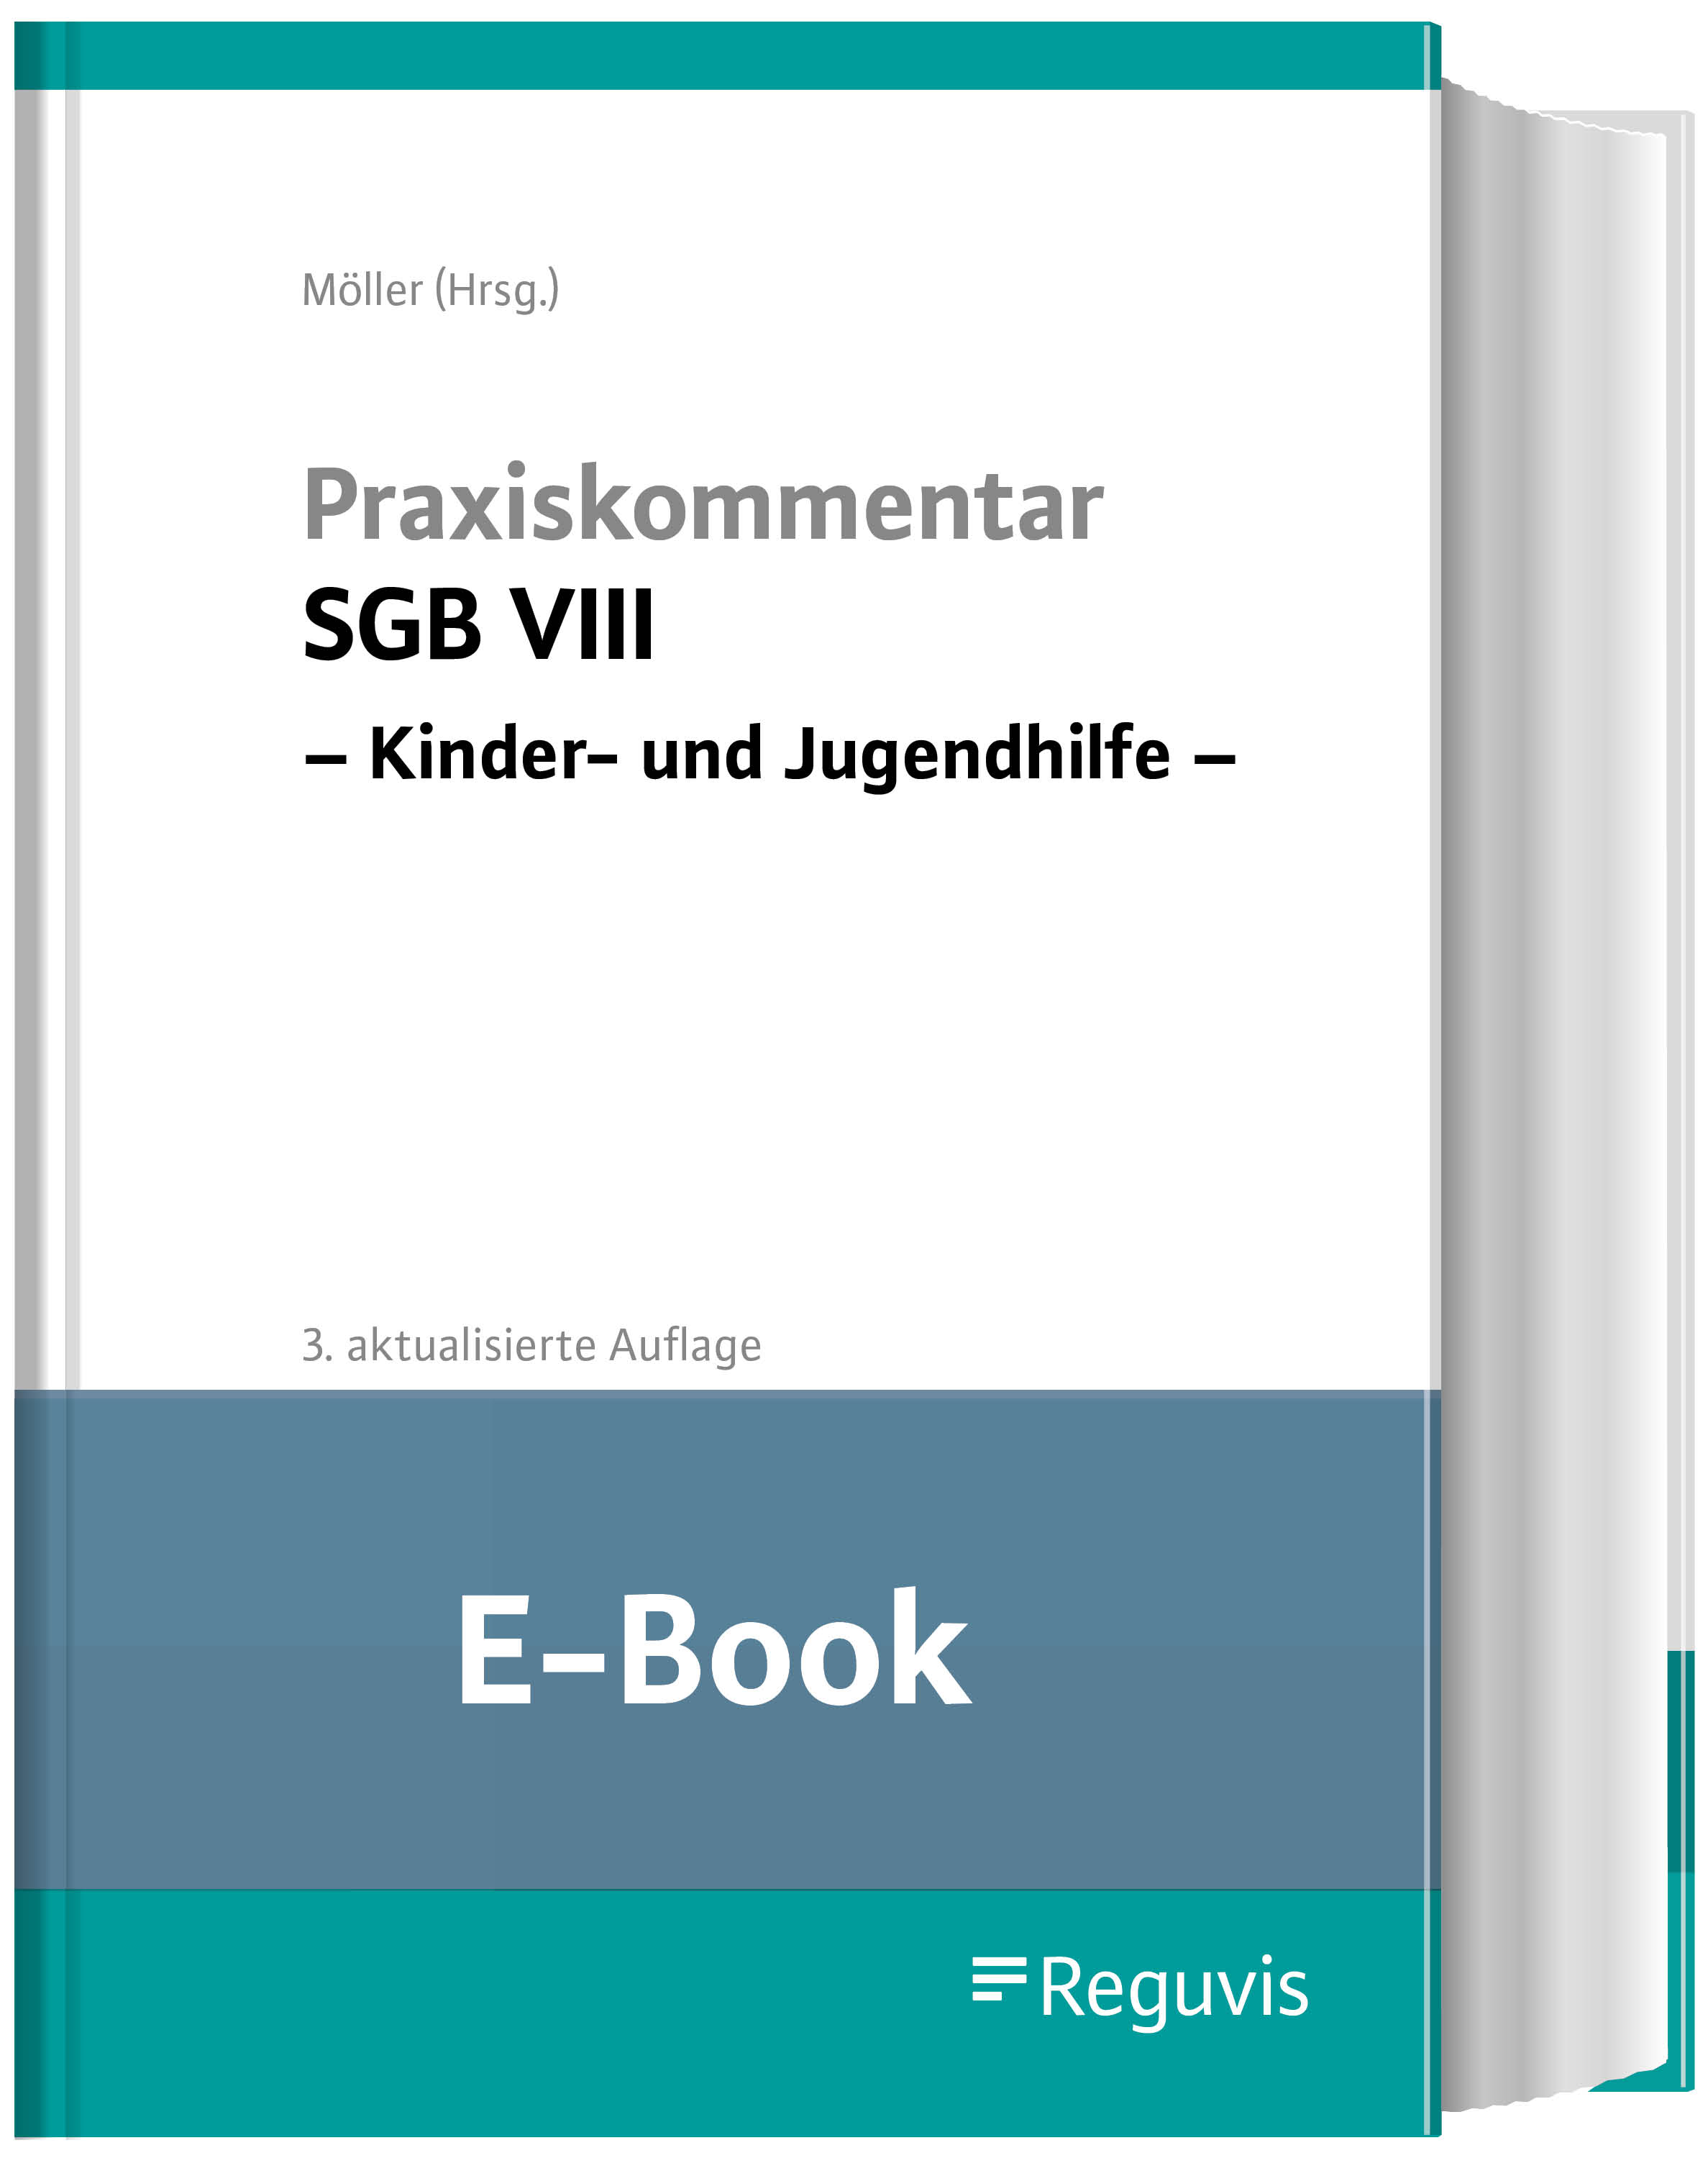 Möller (Hrsg.); Praxiskommentar SGB VIII E-Book